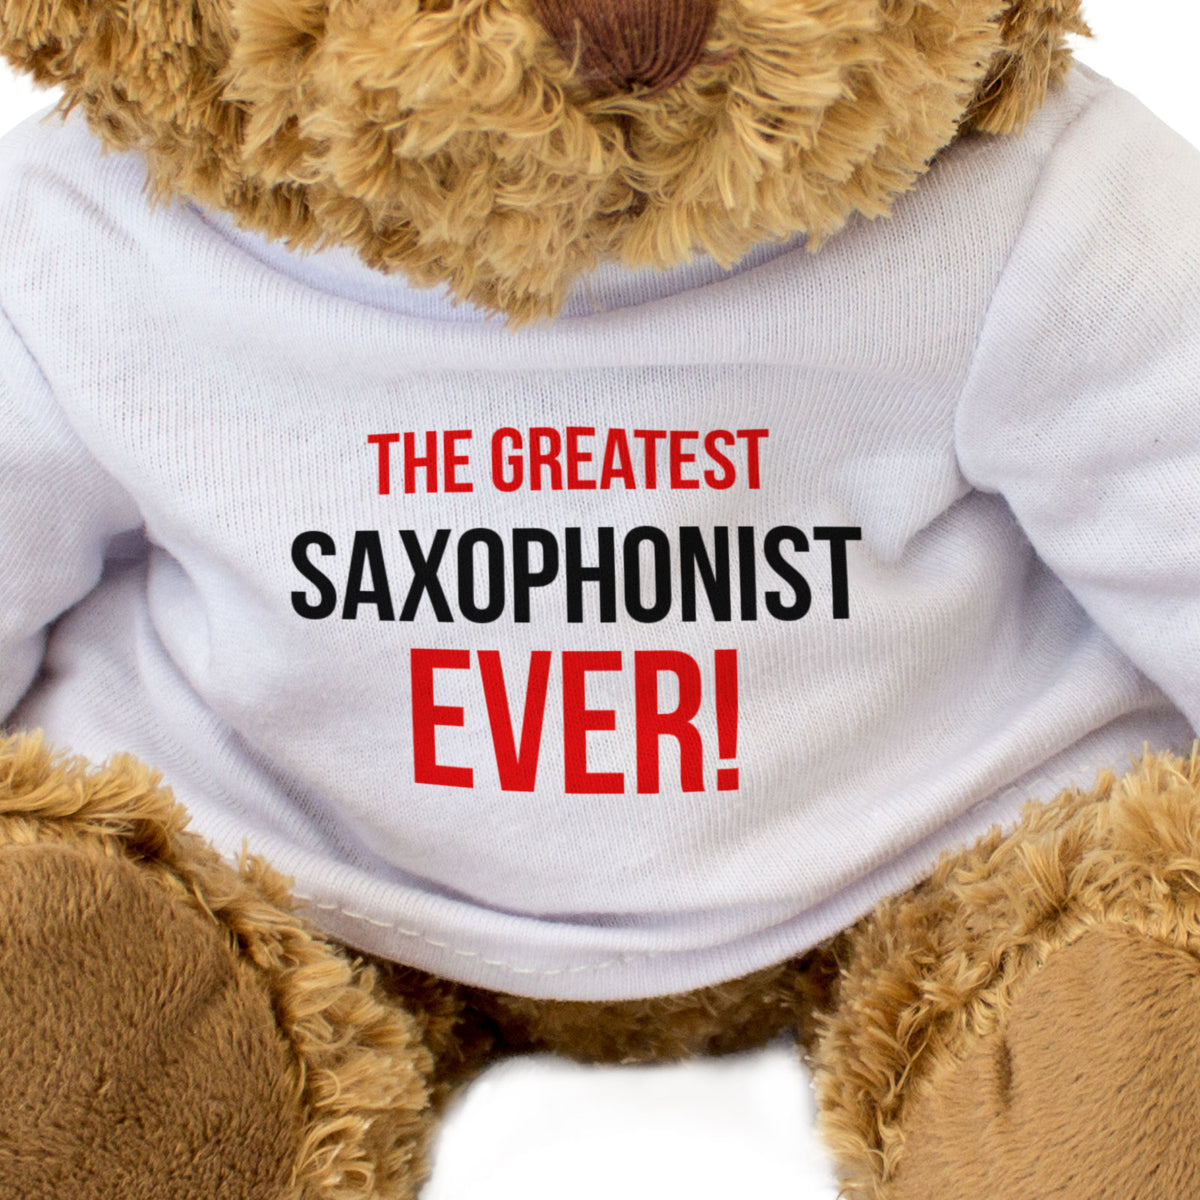 The Greatest Saxophonist Ever - Teddy Bear